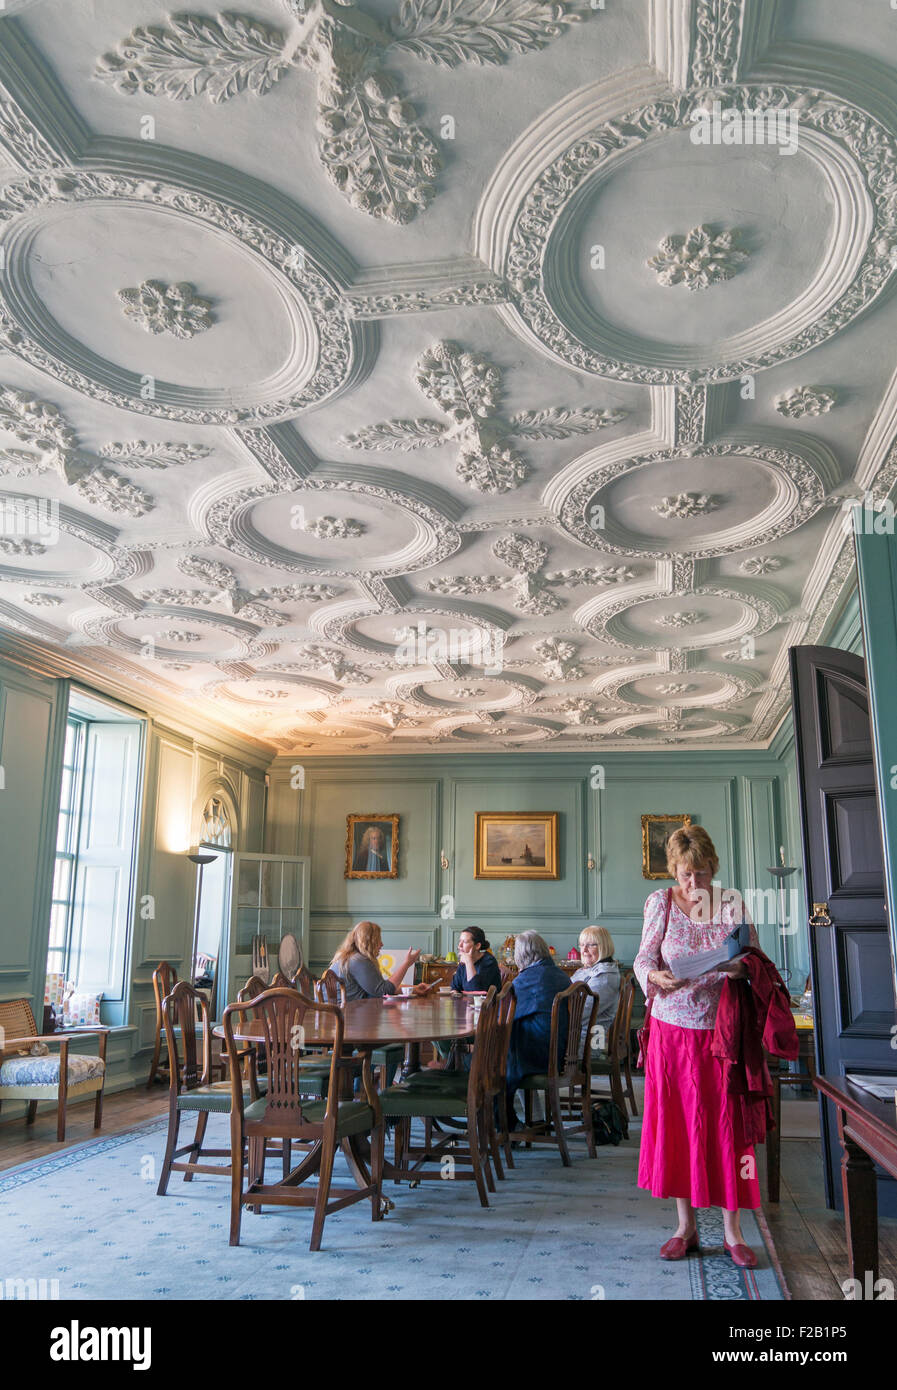 Les visiteurs dans le premier étage chambre lambrissée avec strapwork, plafond en stuc, de l'échevin Fenwick's House, Newcastle, Angleterre Banque D'Images